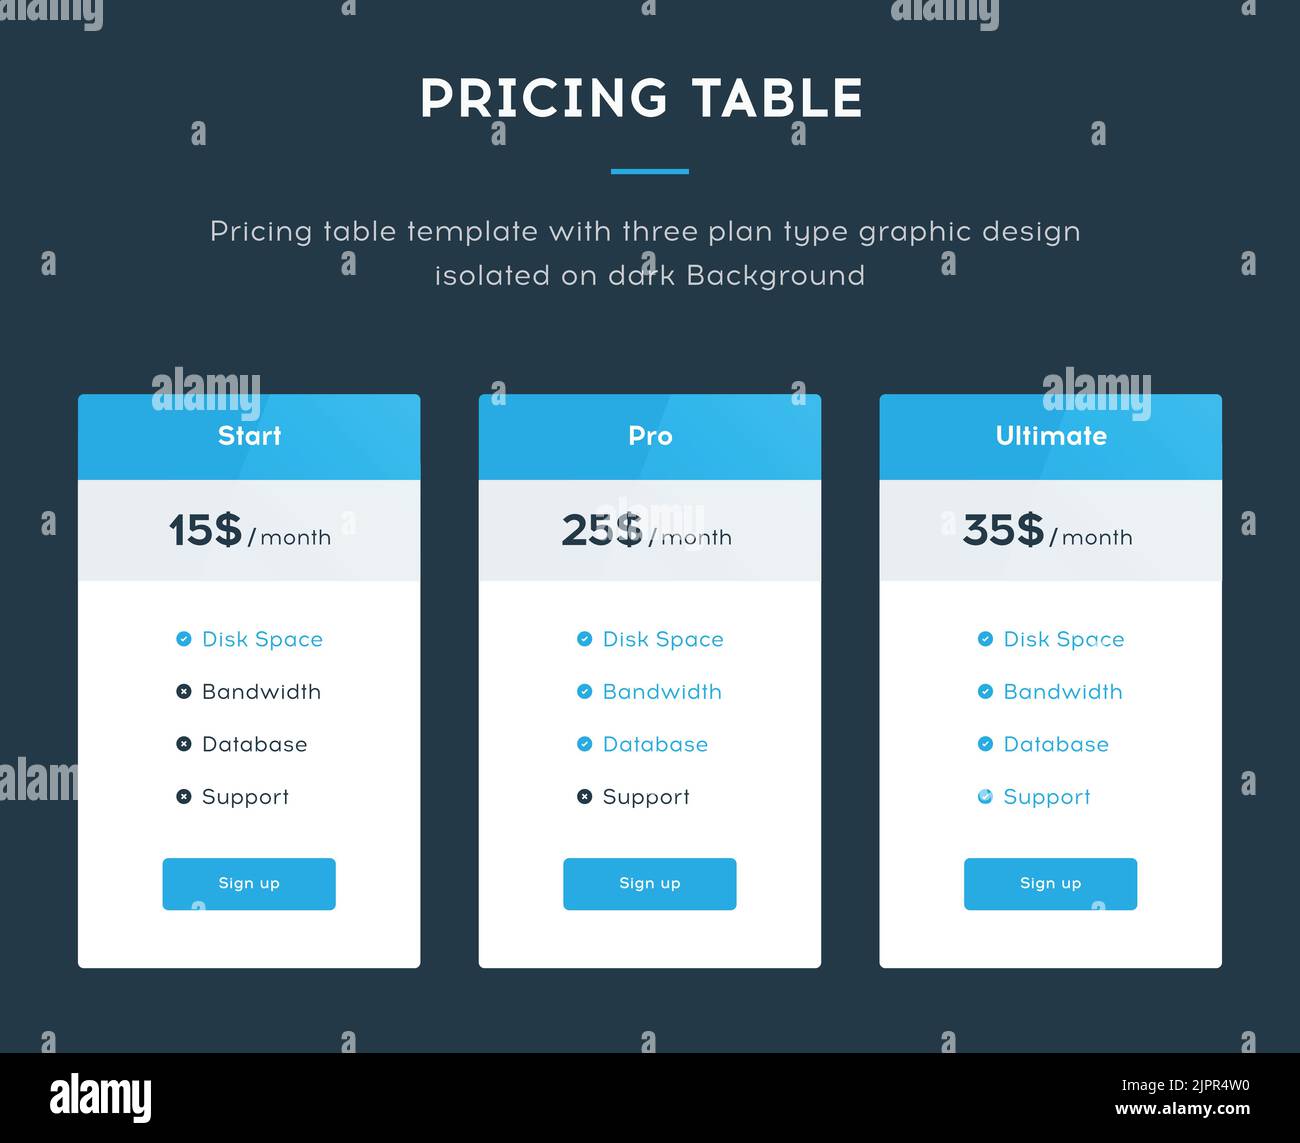 Modello di tabella dei prezzi con tre tipi di piano: Start, Pro e Ultimate. Modello di interfaccia del sito Web per il blocco dei prezzi. Isolato su sfondo scuro Illustrazione Vettoriale